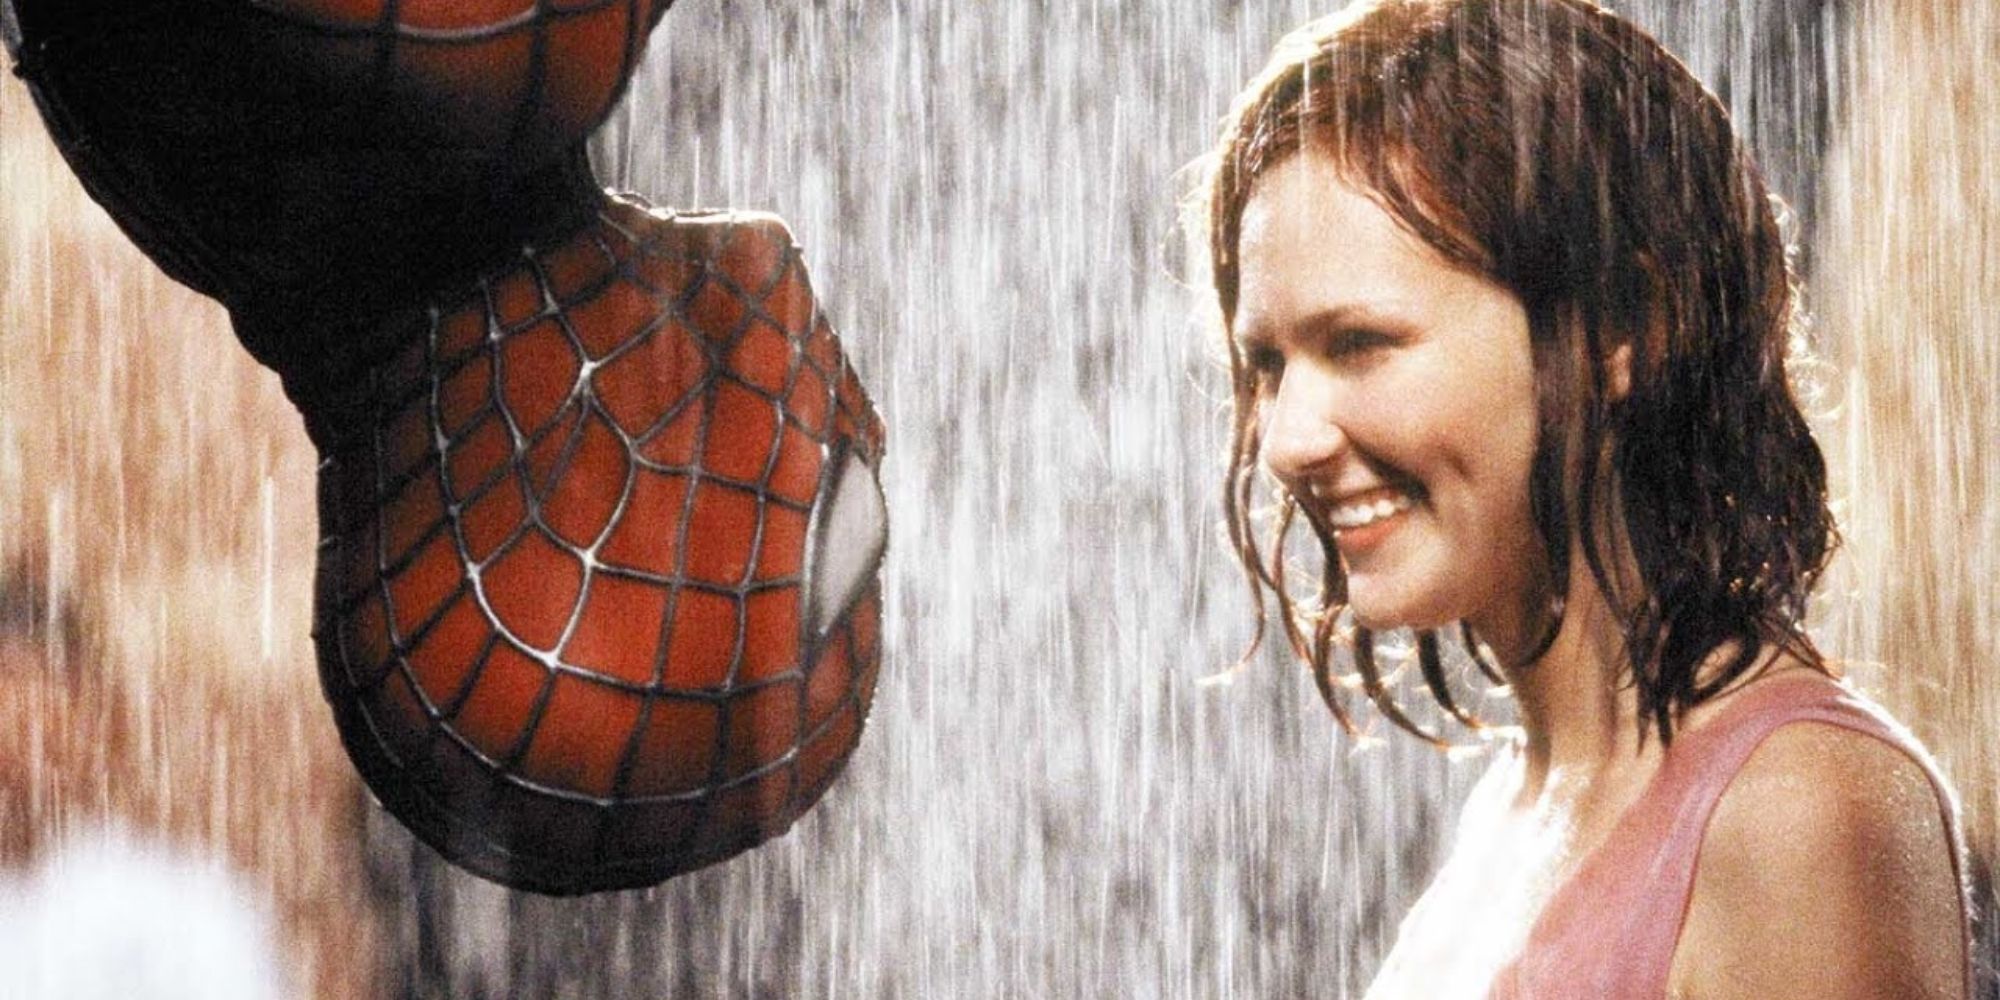 Spider-Man & Mary Jane - Spider-Man